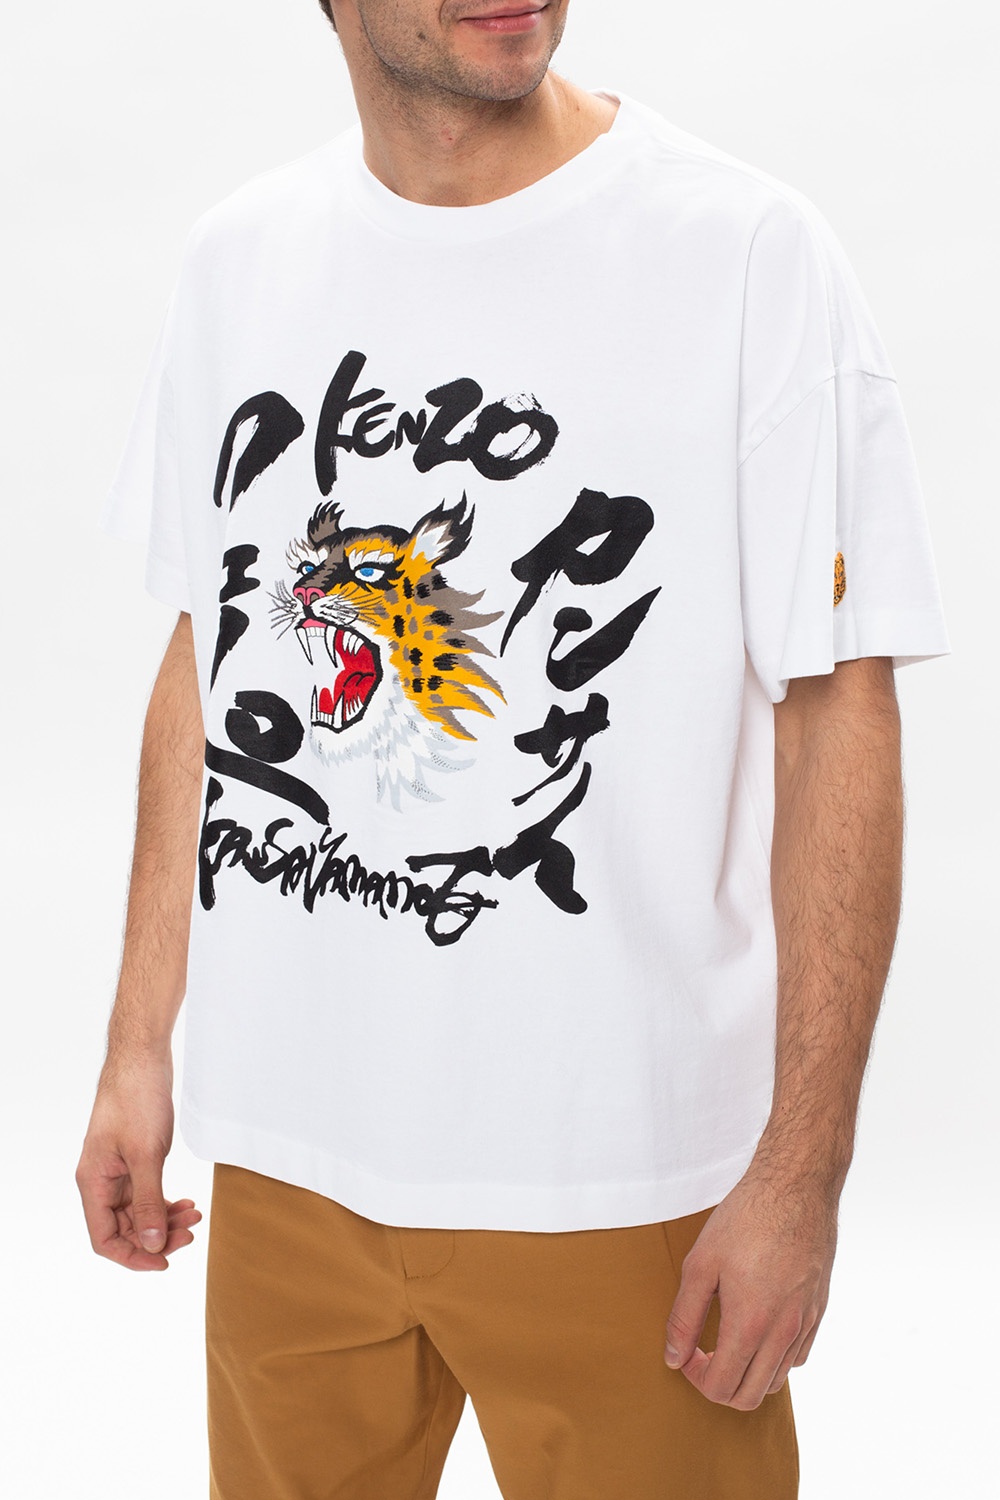 Kenzo Cotton KANSAI YAMAMOTO T-Shirt women - Glamood Outlet